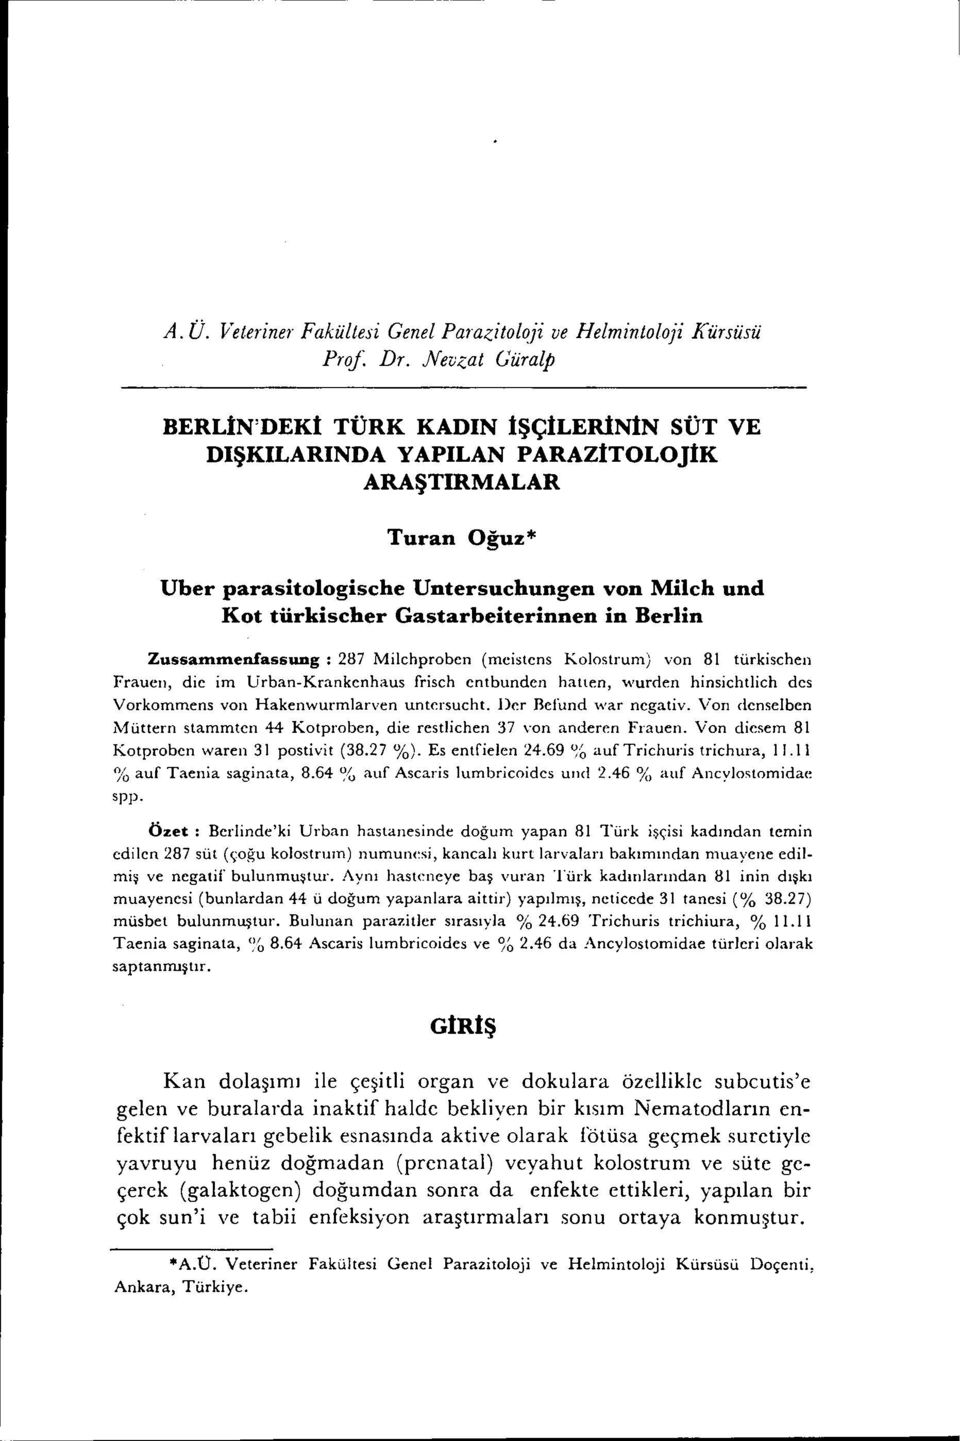 in Berlin Zussanıınenfassung: 287 Milchproben (meistens Kolostrum) von 81 türkischen Fraueıı, die im Urban-Krankenhaus frisch entbunden halten, wurden hinsichtlich des Vorkommens von Hakenwurmlarven